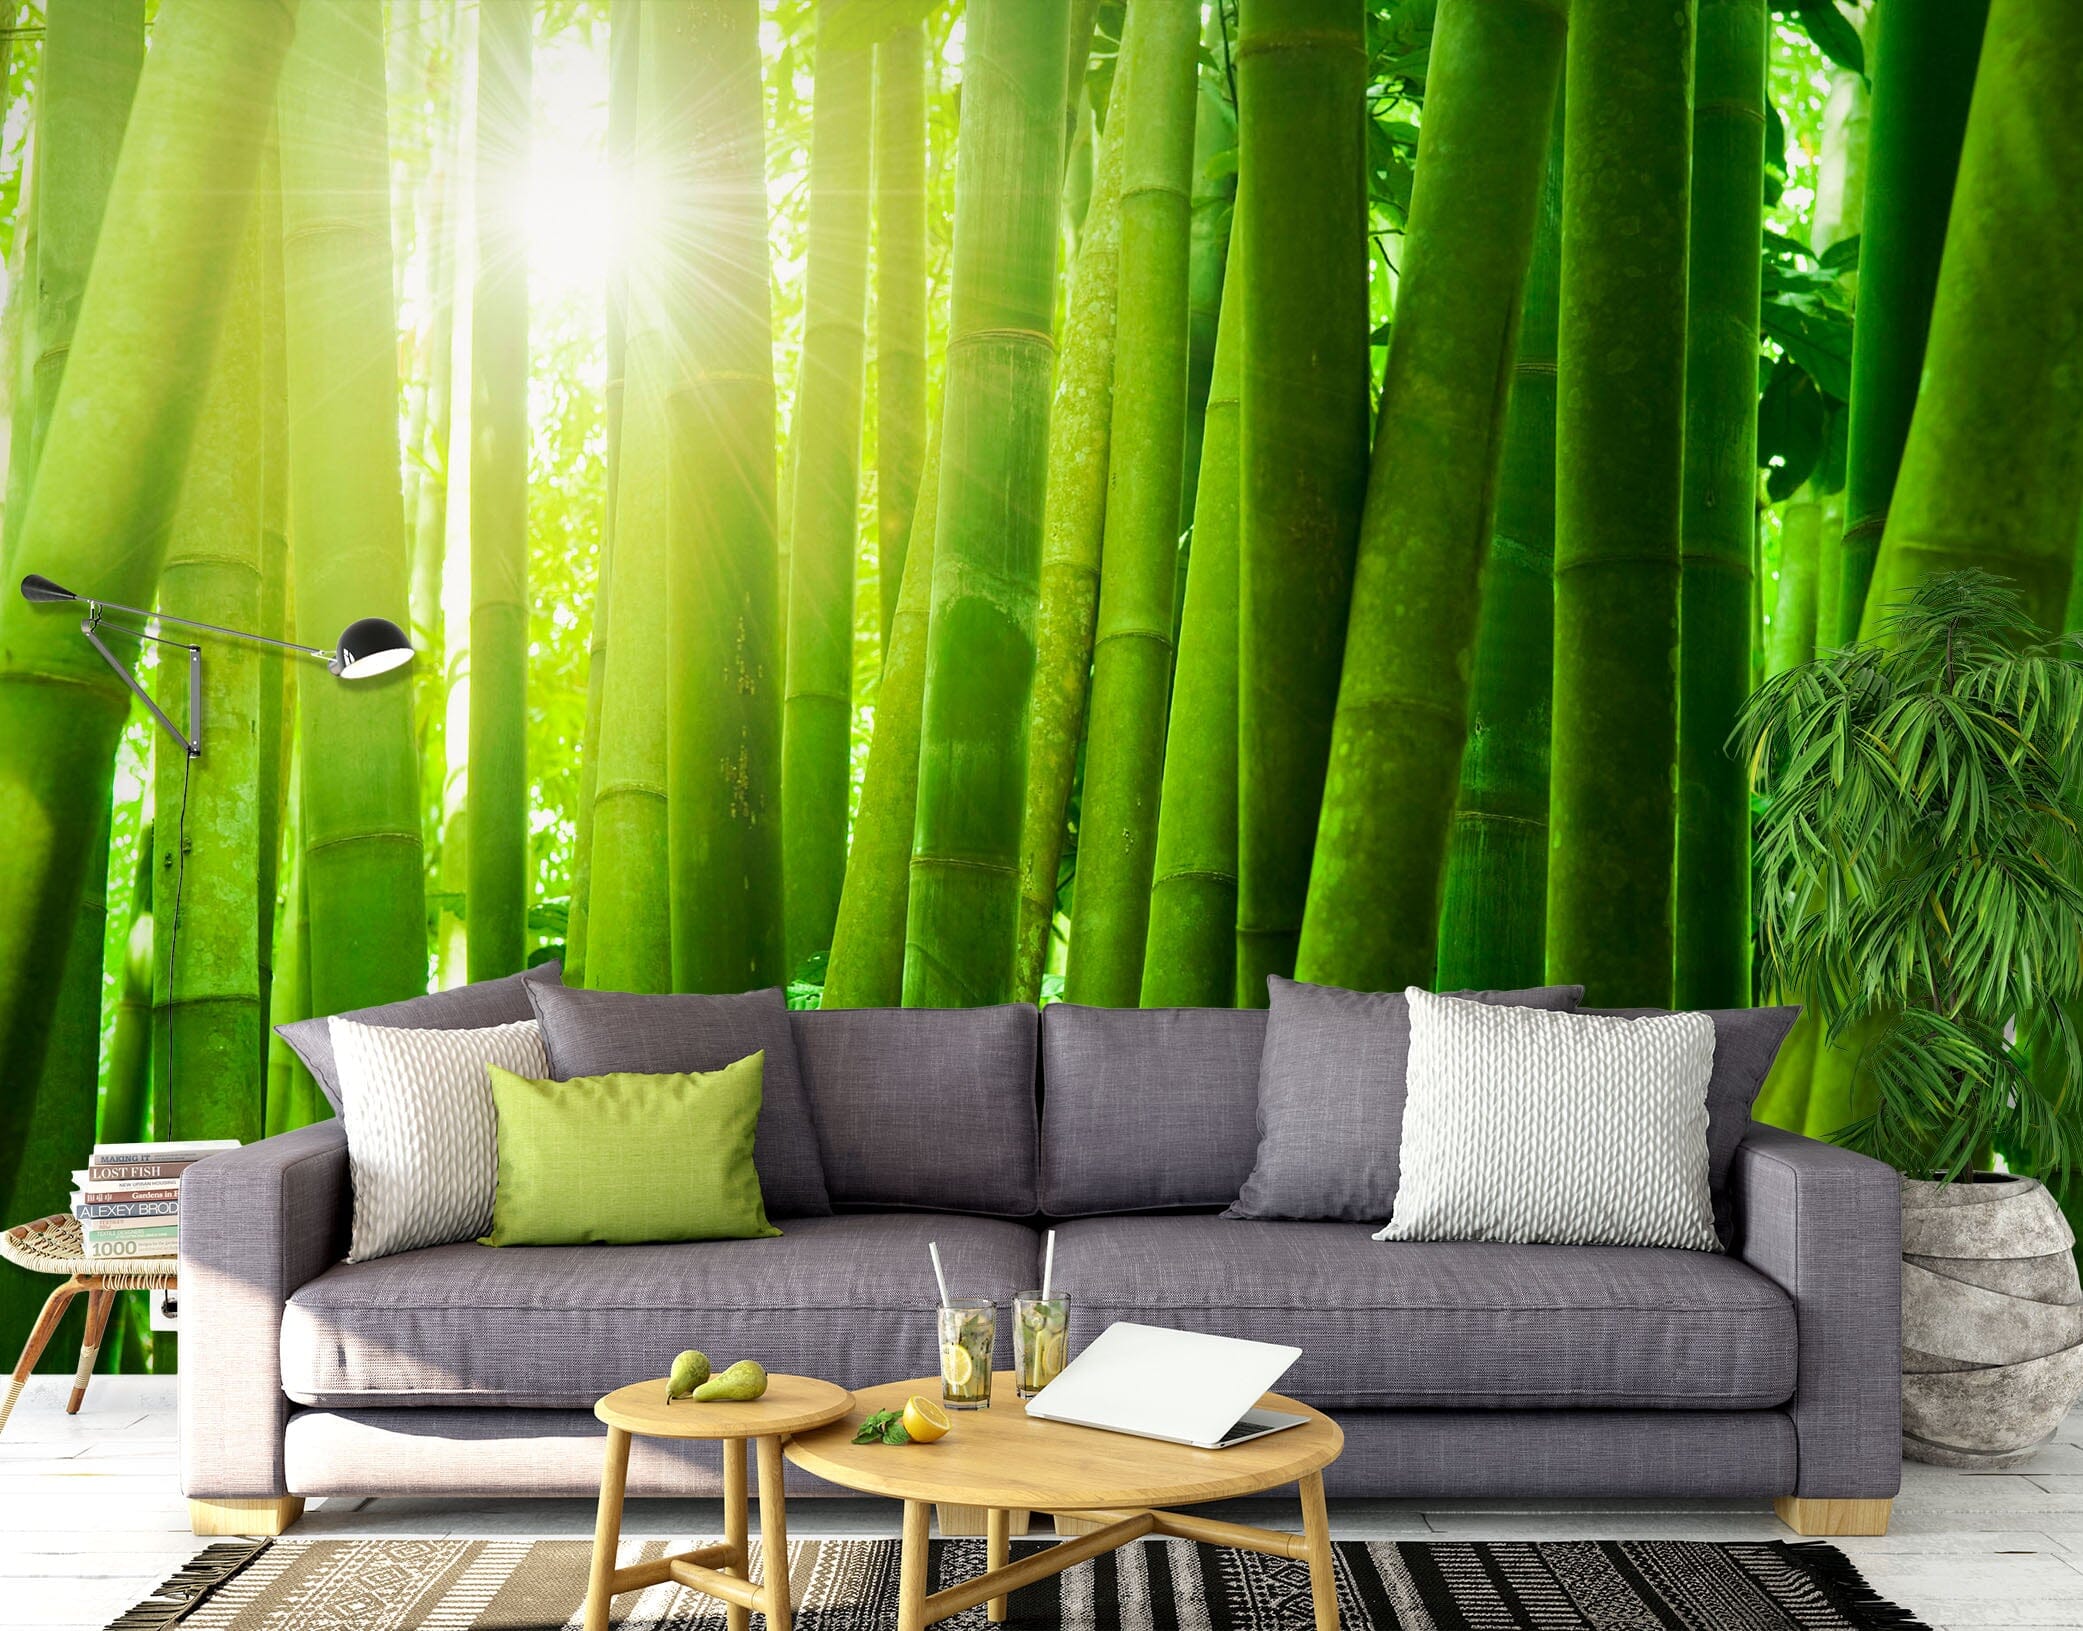 3D Green Bamboo Forest 1405 Wall Murals Wallpaper AJ Wallpaper 2 